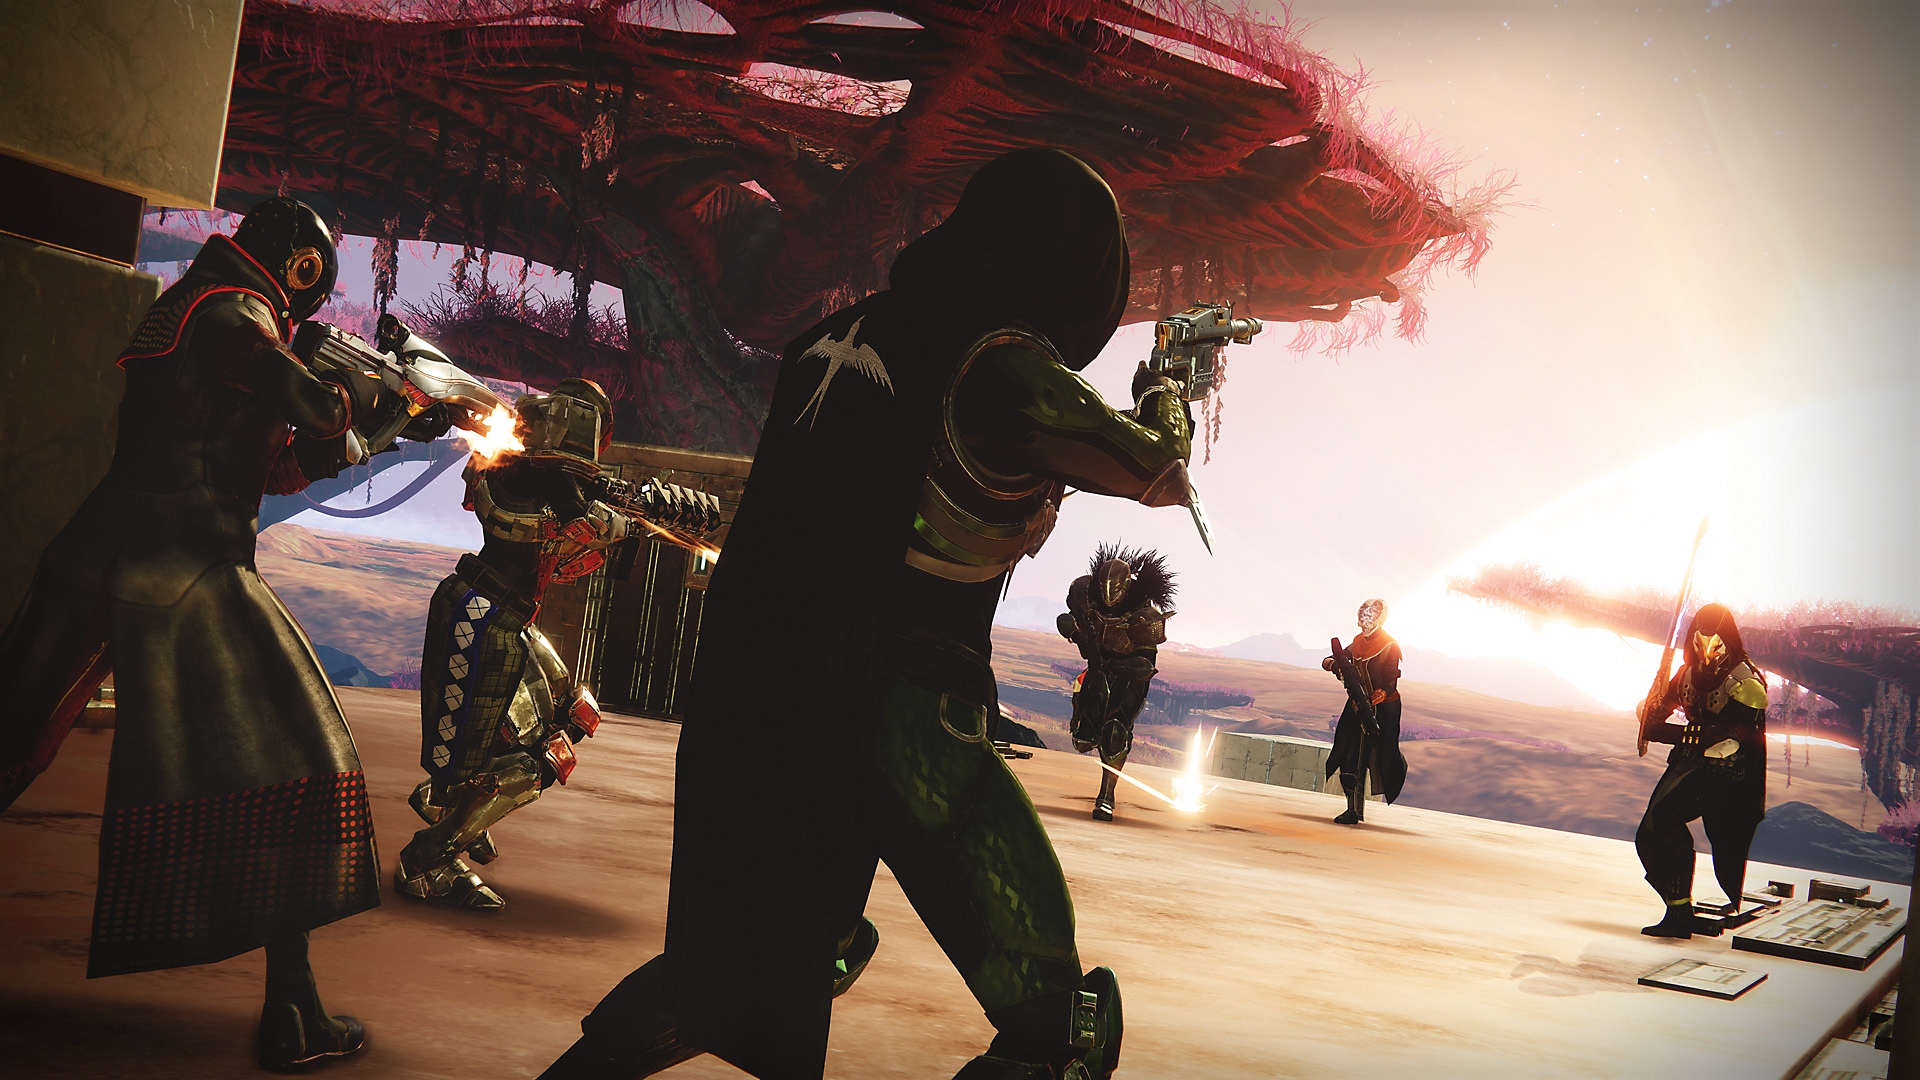 Destiny 2 – снимок экрана, на котором происходит сражение